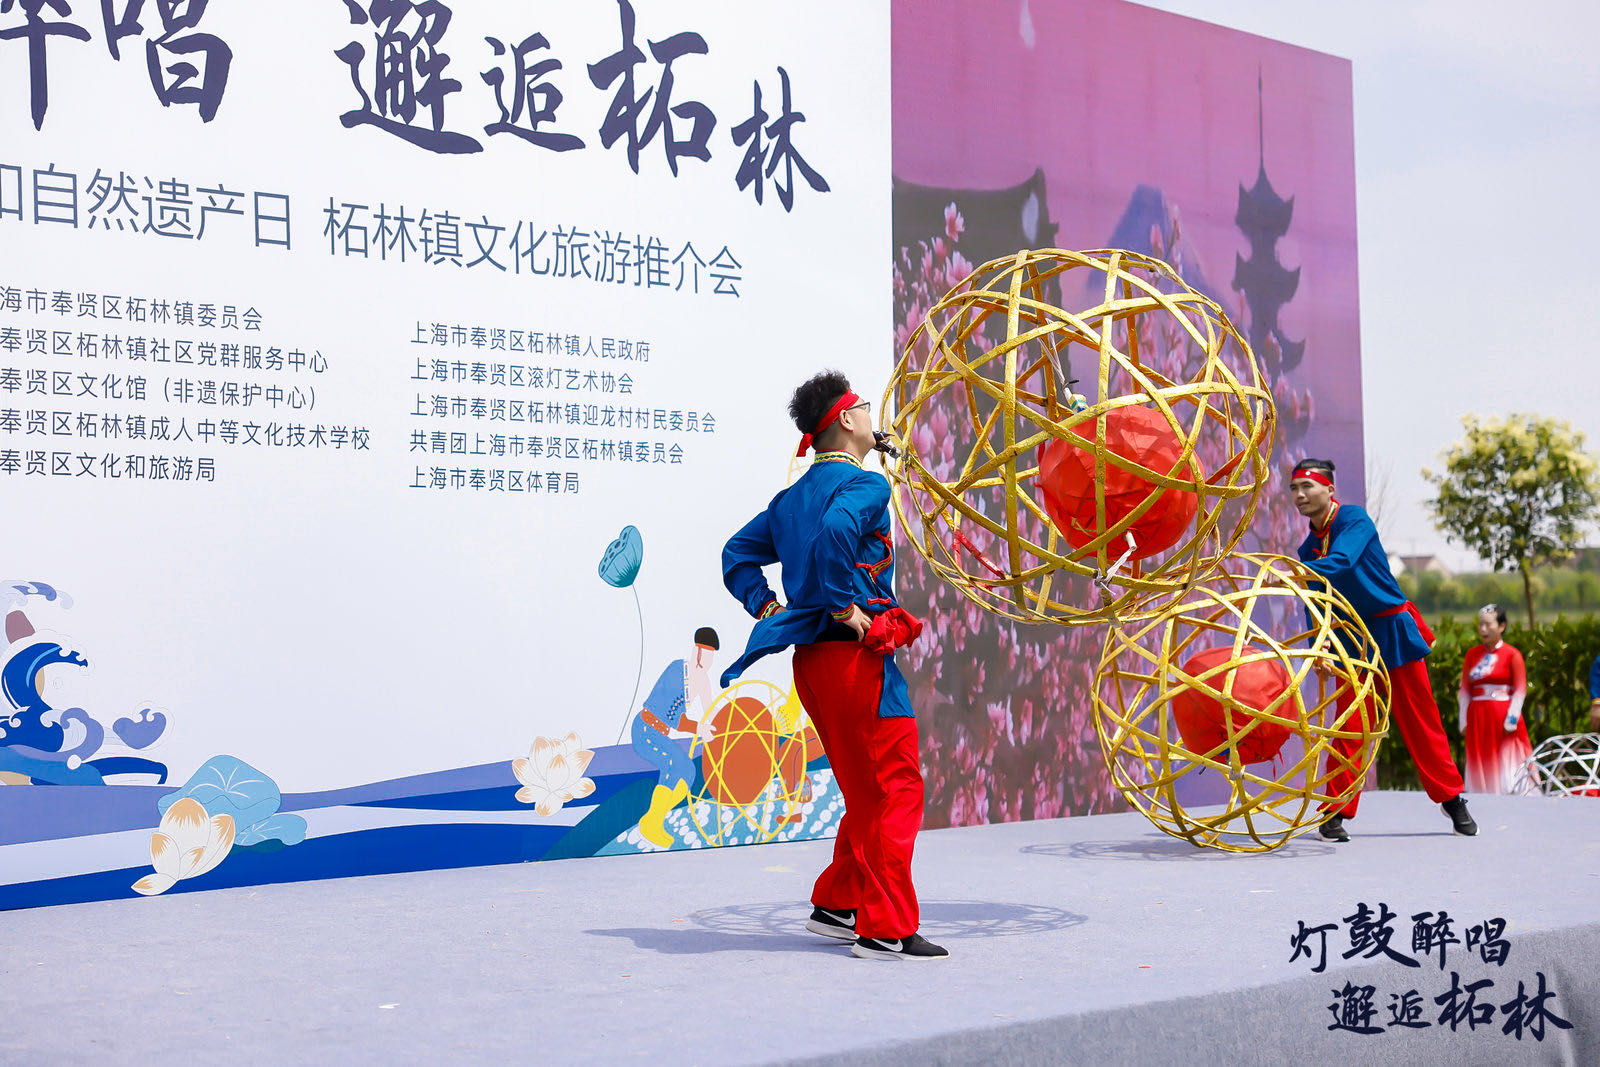 国家级非遗项目"奉贤滚灯,不仅是可翻滚的舞蹈,更是上海沿海先民与海